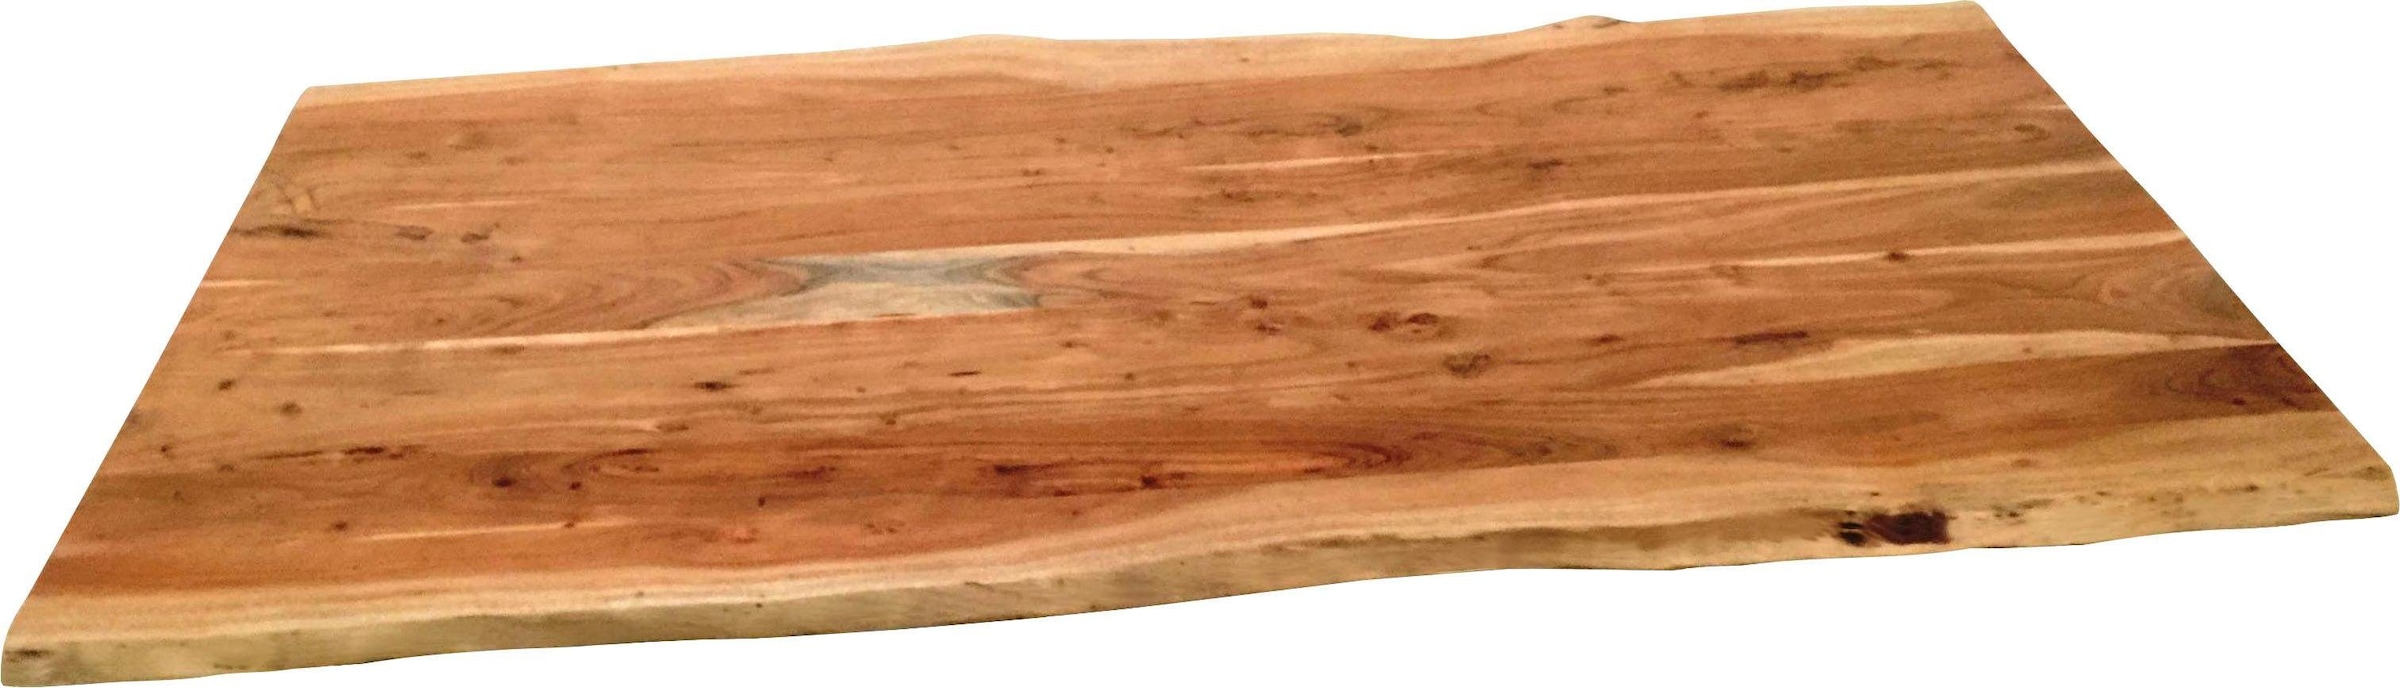 Tischplatte, aus Massivholz Akazie, mit Baumkante